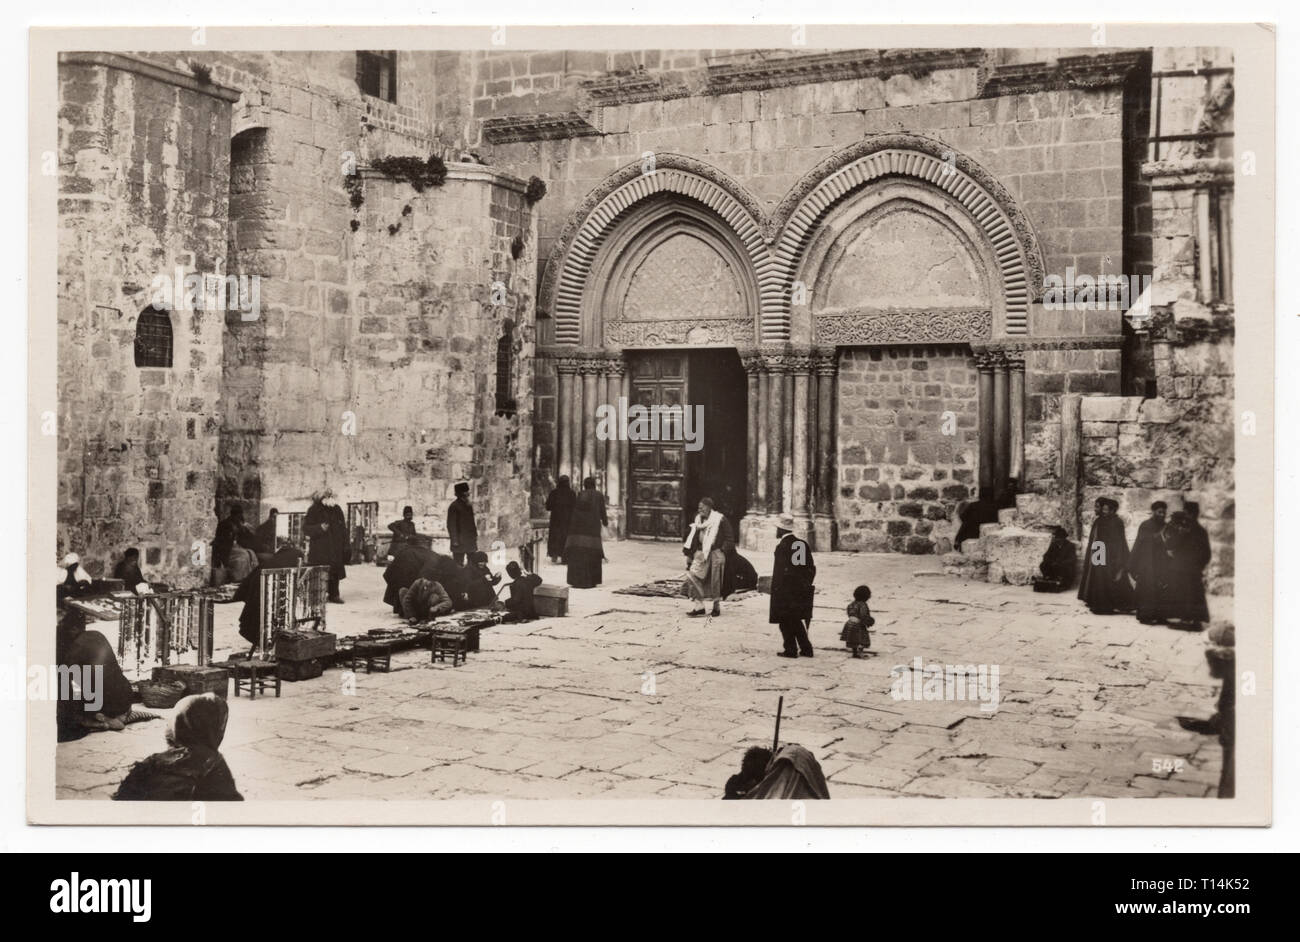 Entrée de l'église du Saint-Sépulcre à Jérusalem représentée dans la carte postale vintage sans date. Avec la permission de l'Azoor Collection Carte Postale. Banque D'Images